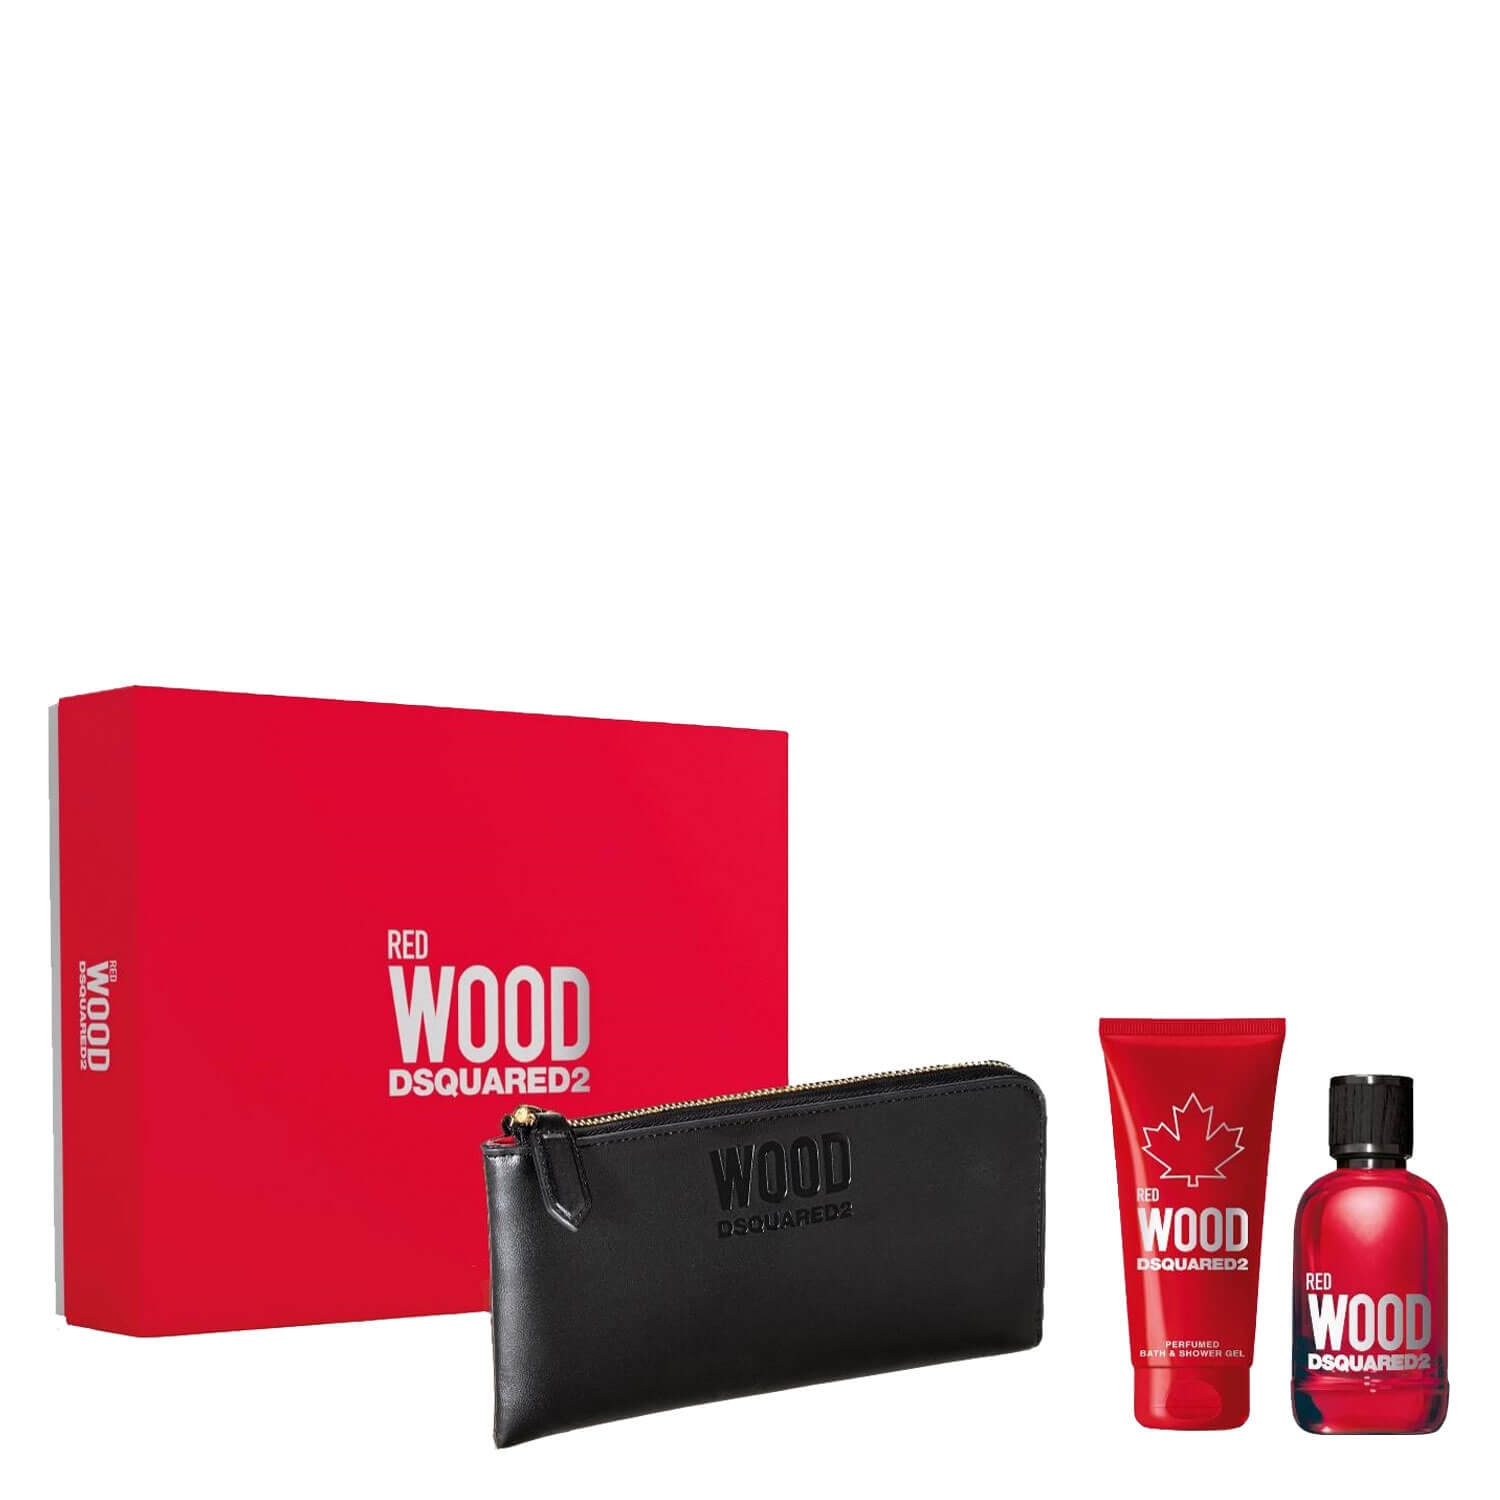 Produktbild von DSQUARED2 WOOD - Red Pour Femme Eau de Toilette Kit